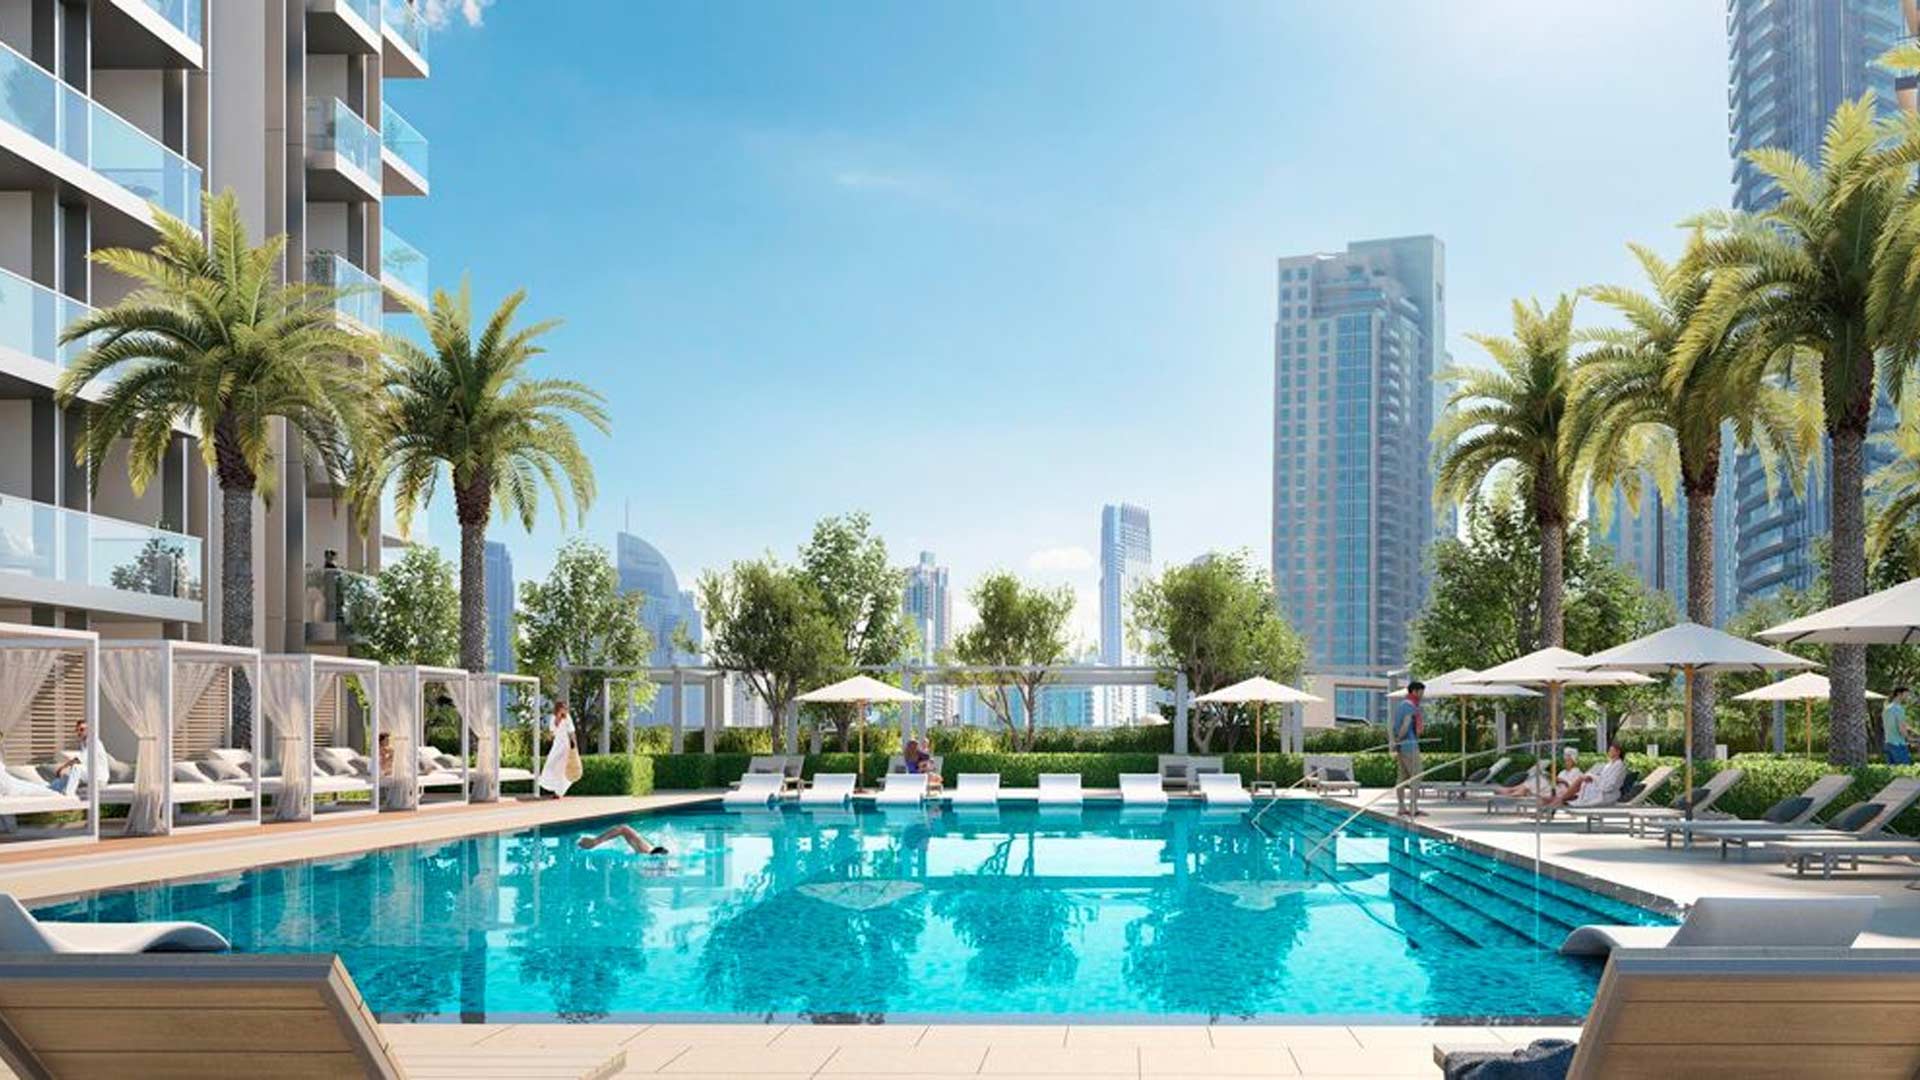 ST.REGIS RESIDENCES by Emaar Properties in Downtown Dubai, Dubai, UAE - 3